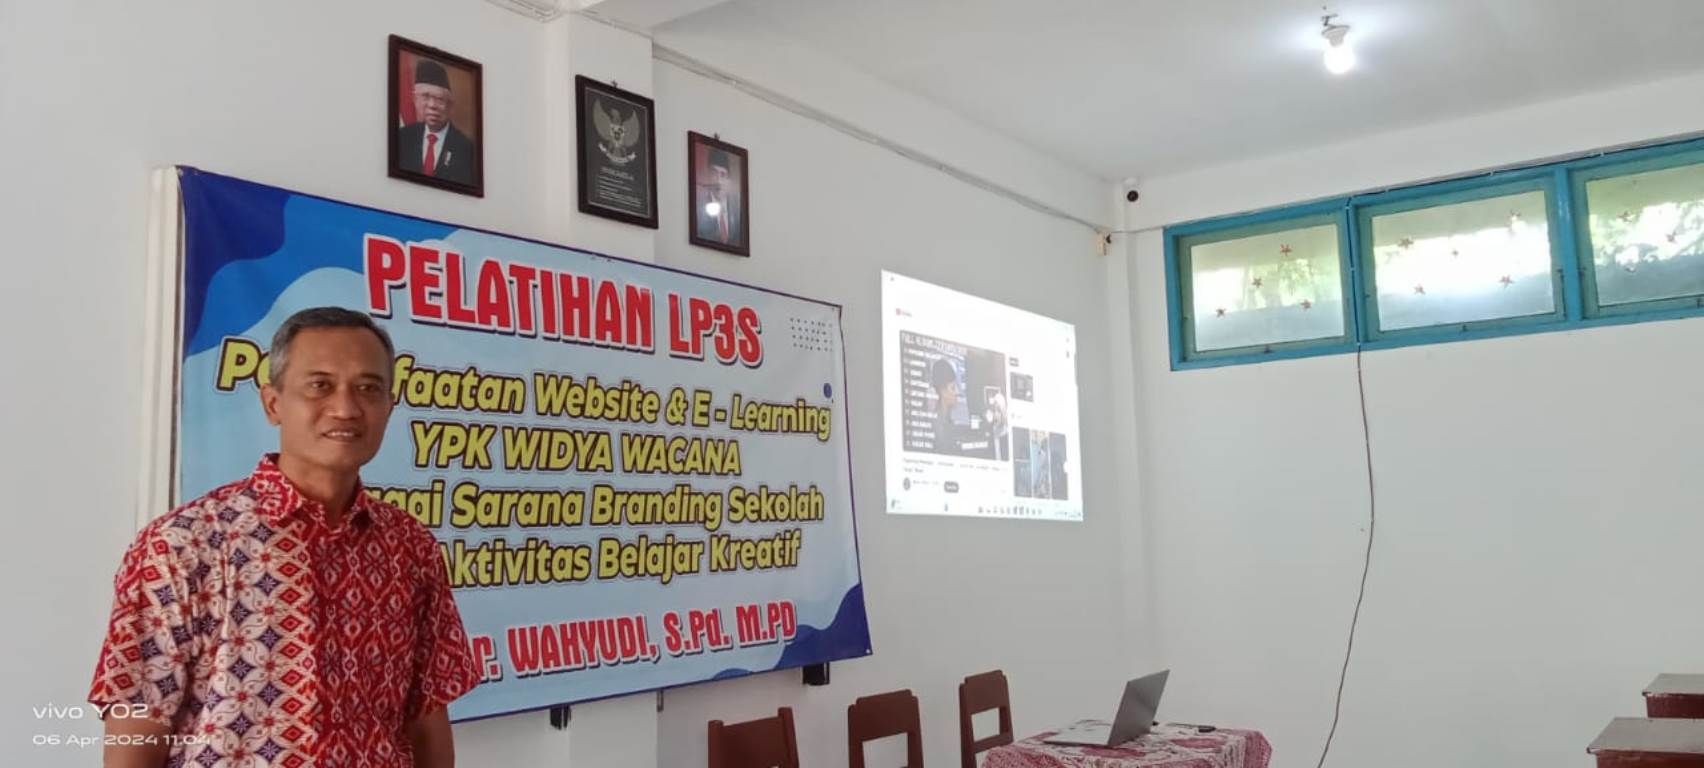 Pengurus YPK Widya Wacana, Pdt Tyas Budi Legowo, menunjukkan ruang kelals yang akan dipergunakan untuk mendukung program digitalisasi di SMA Kristen Purwodadi.